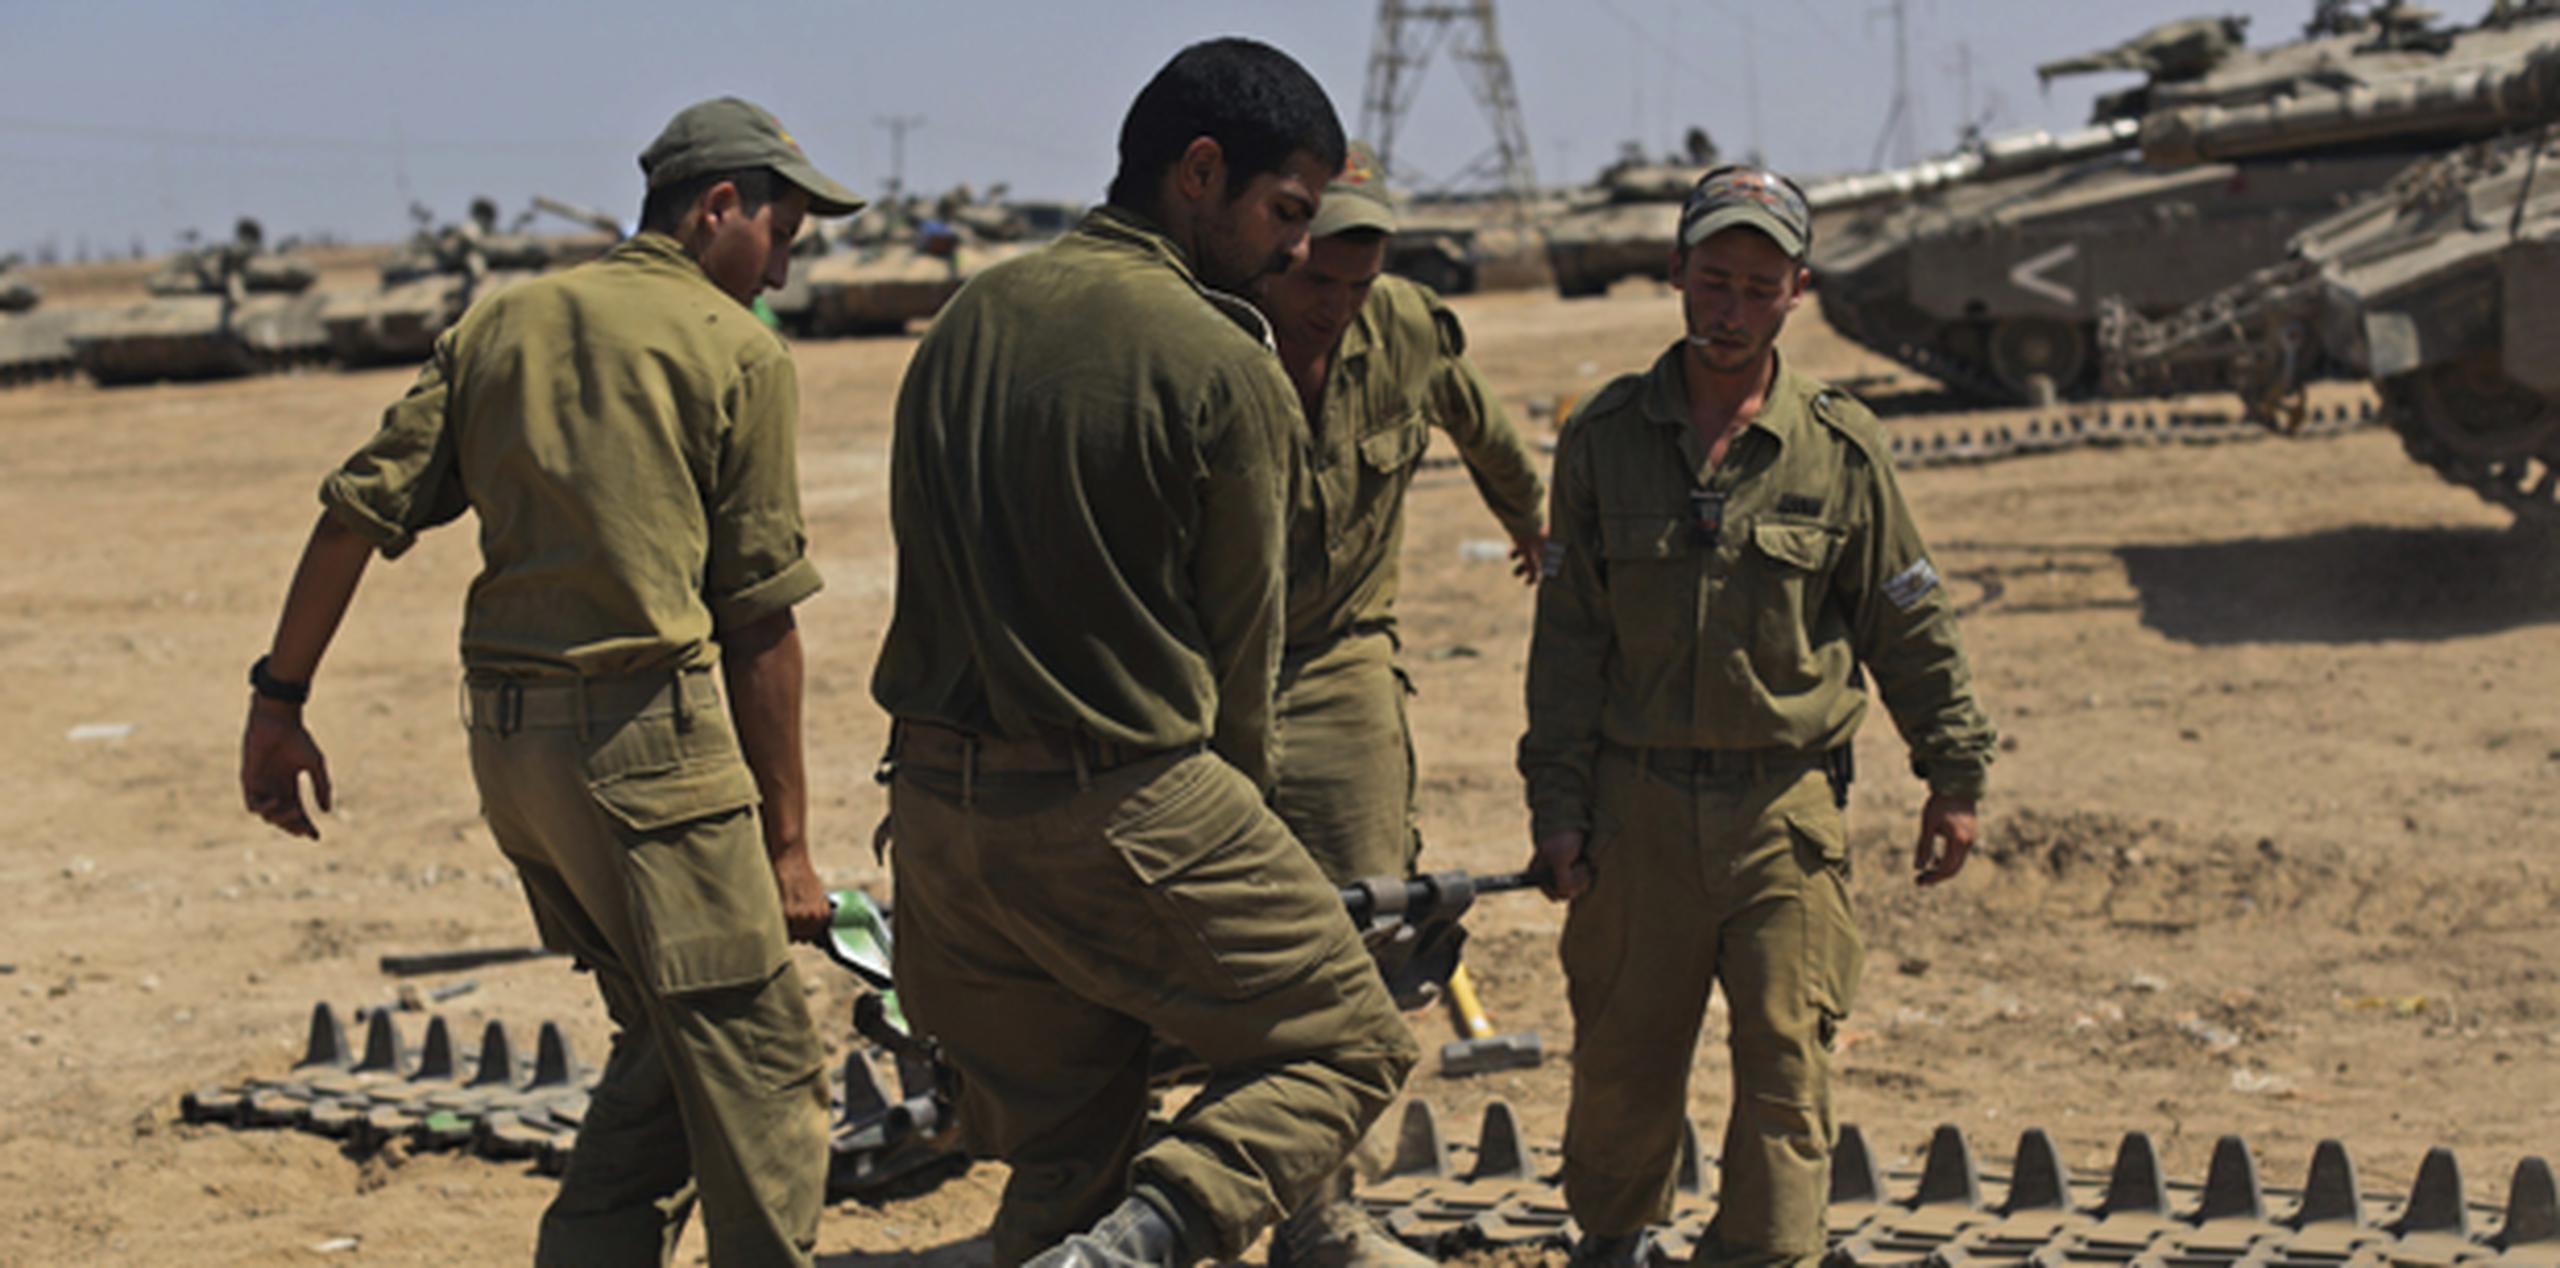 Soldados israelíes llevan a cabo el mantenimiento de la oruga de un carro de combate en un lugar sin especificar en la frontera con la Franja de Gaza. (EFE/Atef Safadi)